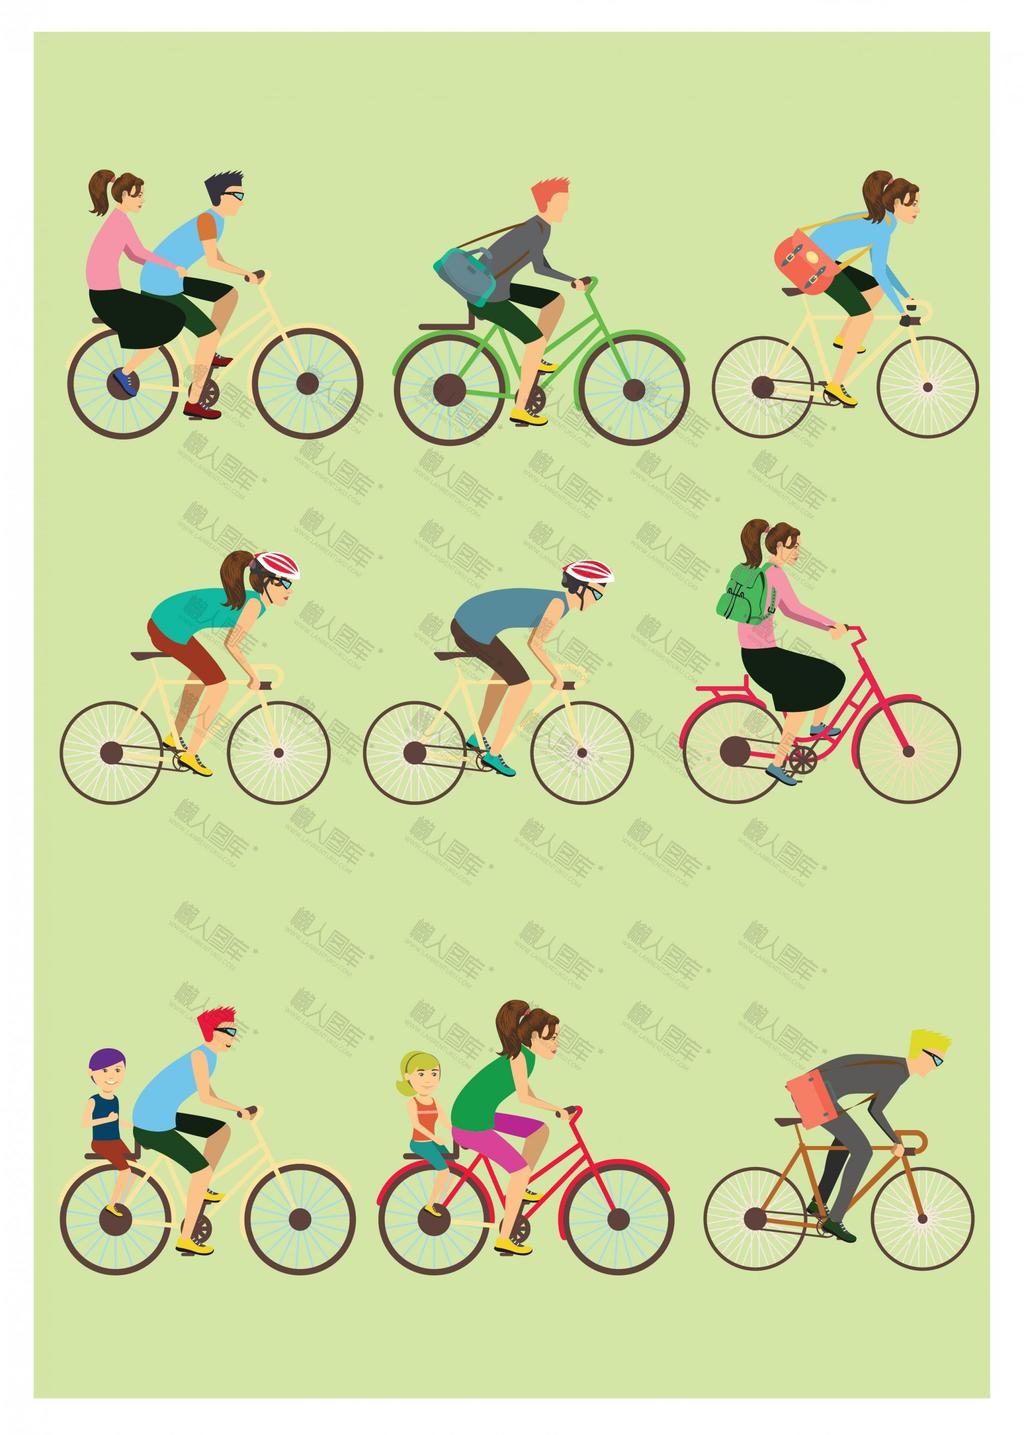 自行车比赛logo